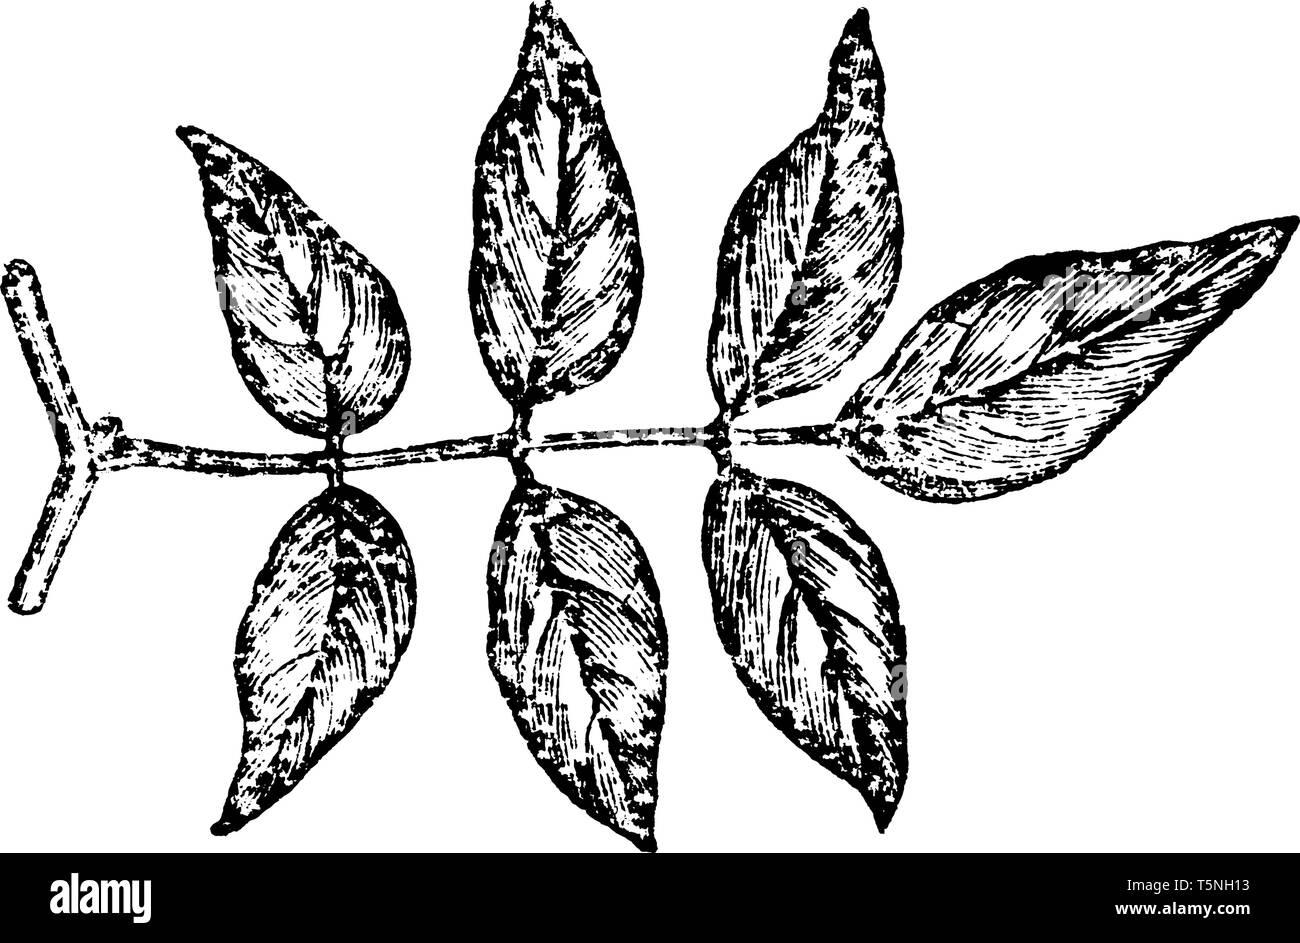 Impari a foglie pinnate sono leggeri, mossy-verde e il foglietto illustrativo sono di forma ovale-repand e sono ruvido sulla superficie sotto, vintage disegno della linea o engravin Illustrazione Vettoriale